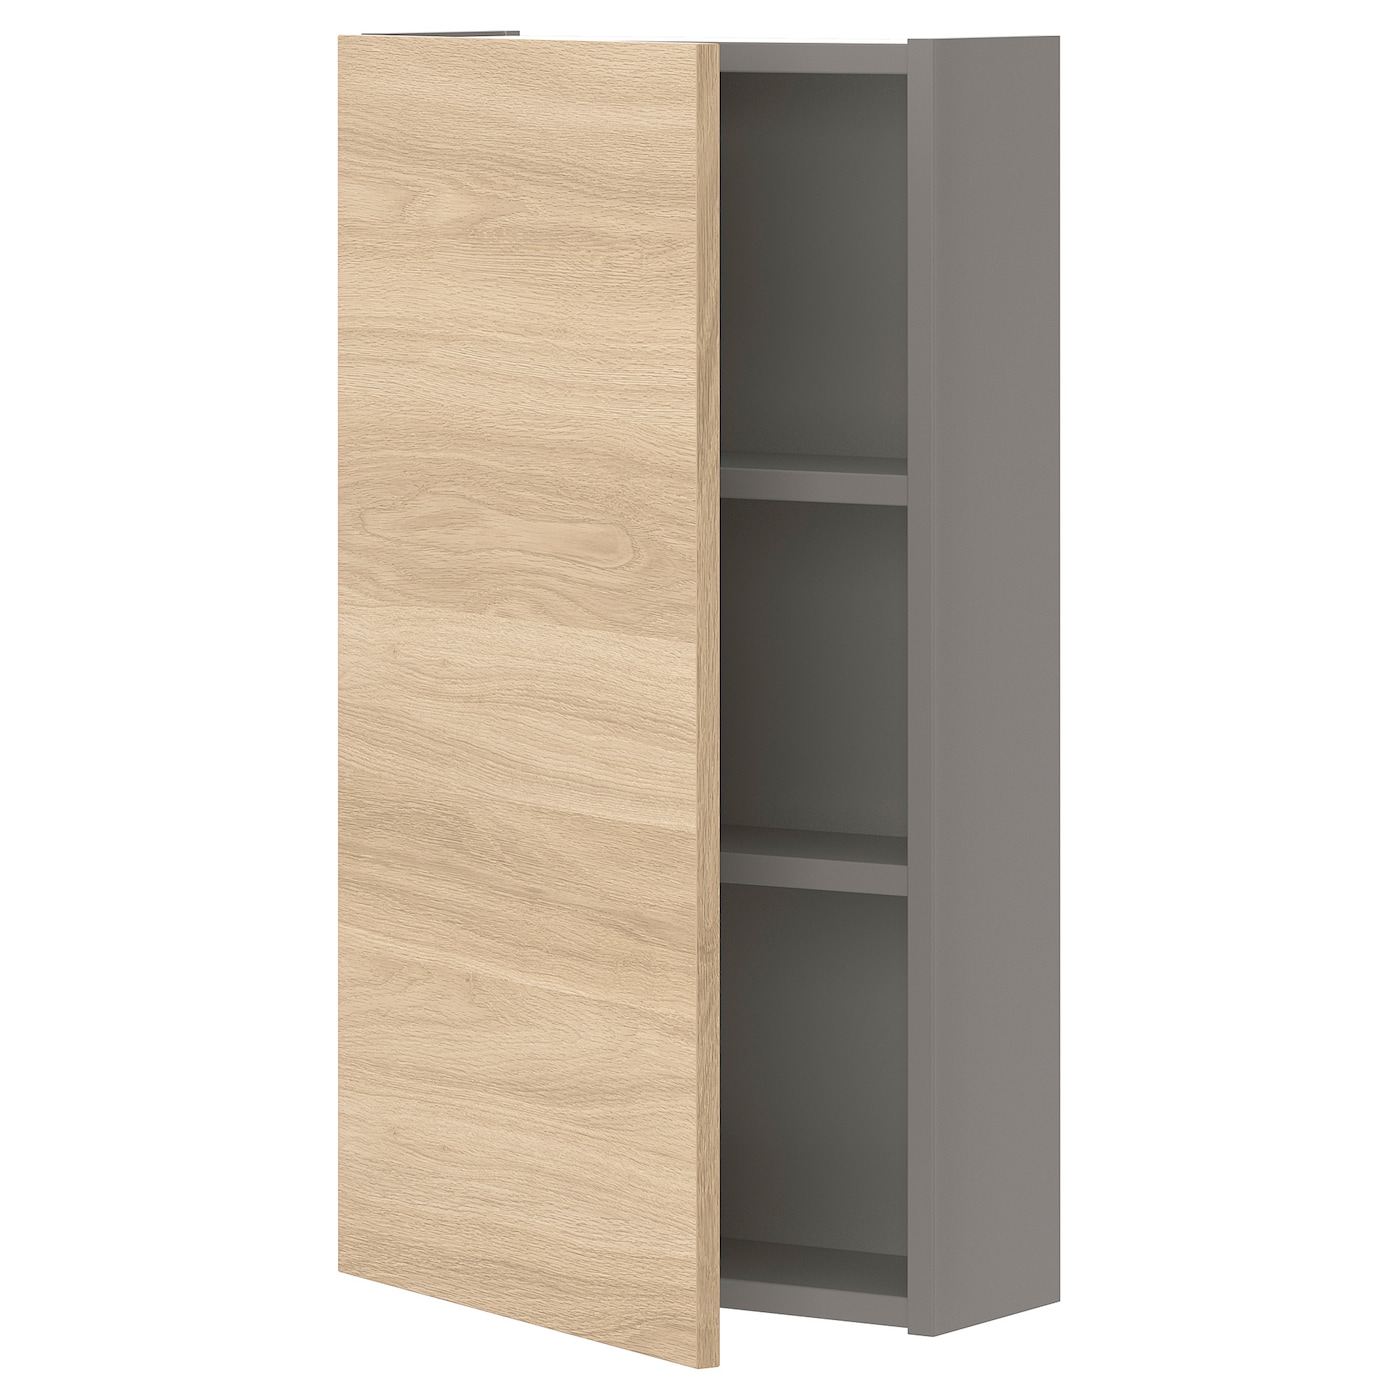 Настенный шкаф для ванной комнаты - ENHET IKEA/ ЭНХЕТ ИКЕА, 40x15x75 см, серый/бежевый